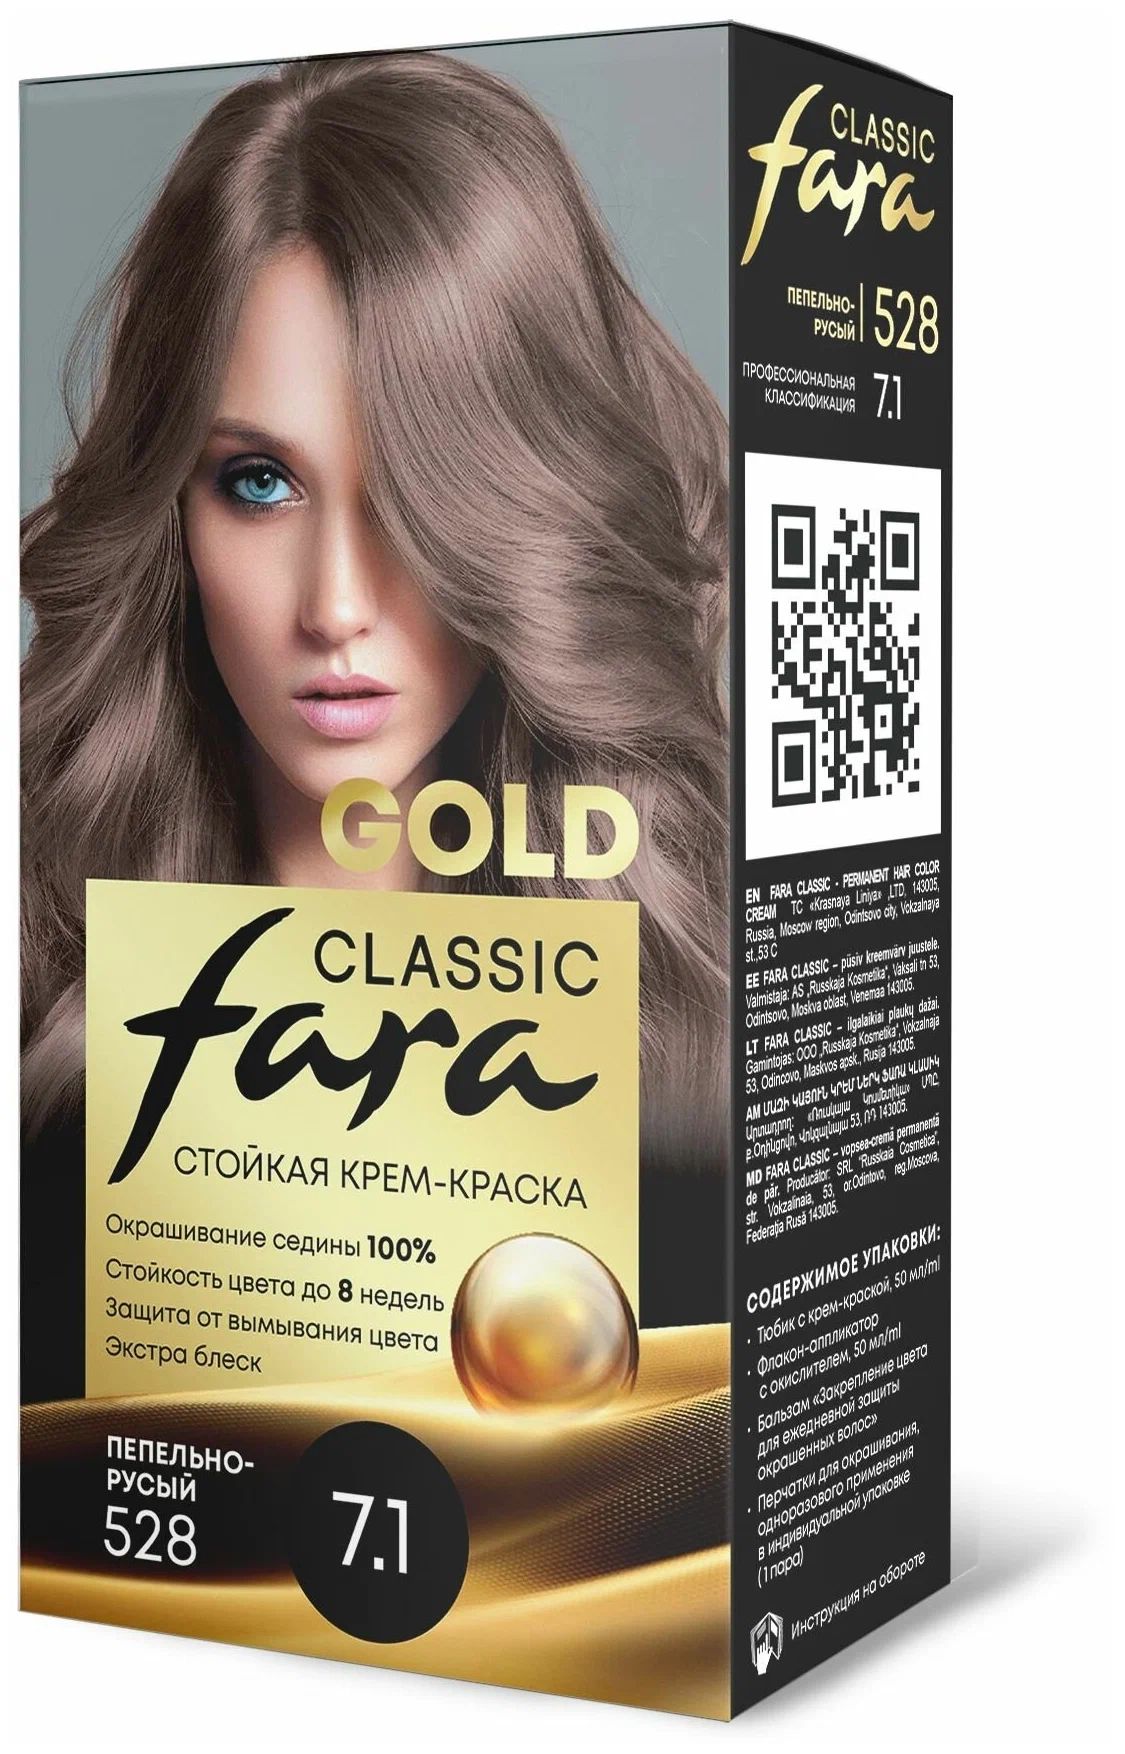 Крем-краска для волос Fara Classic Gold 528 пепельно-русый 7.1, 140 г младоформалисты русская проза